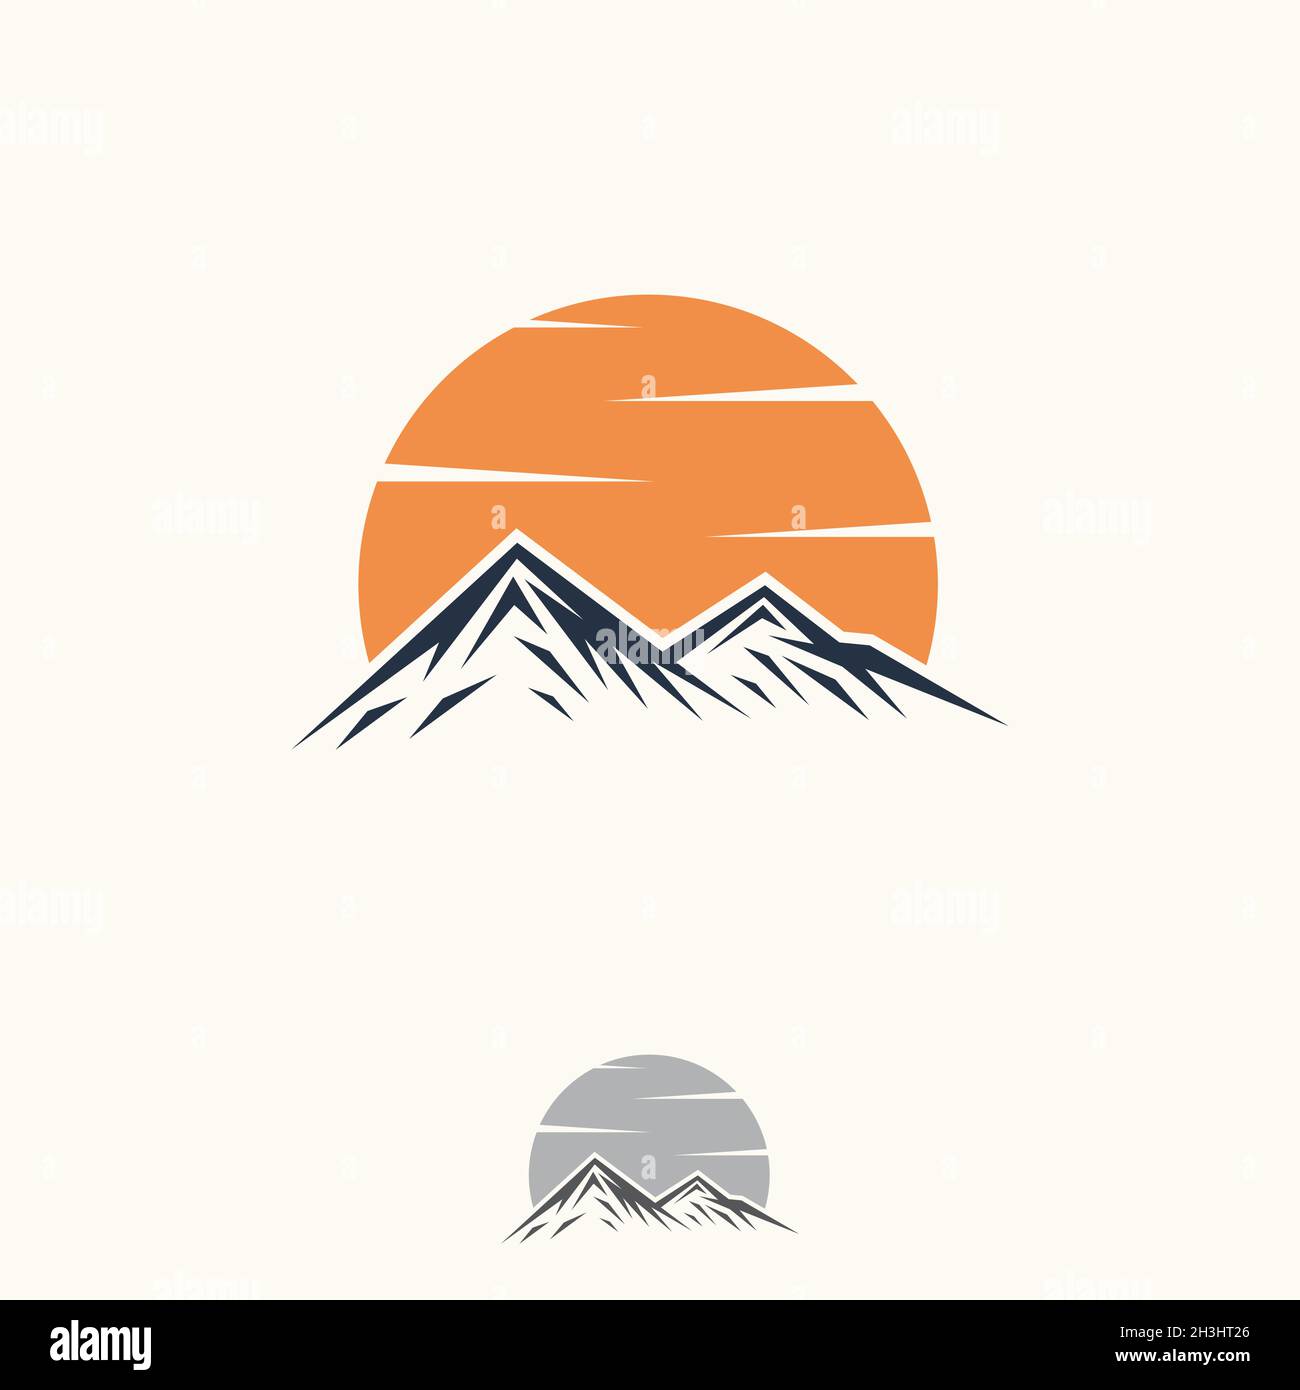 Abstrakte Vektorgrafik Landschaft Natur oder Outdoor-Blick auf die Berge Silhouette. Berge und Reisesymbole für Tourismusorganisationen Stock Vektor